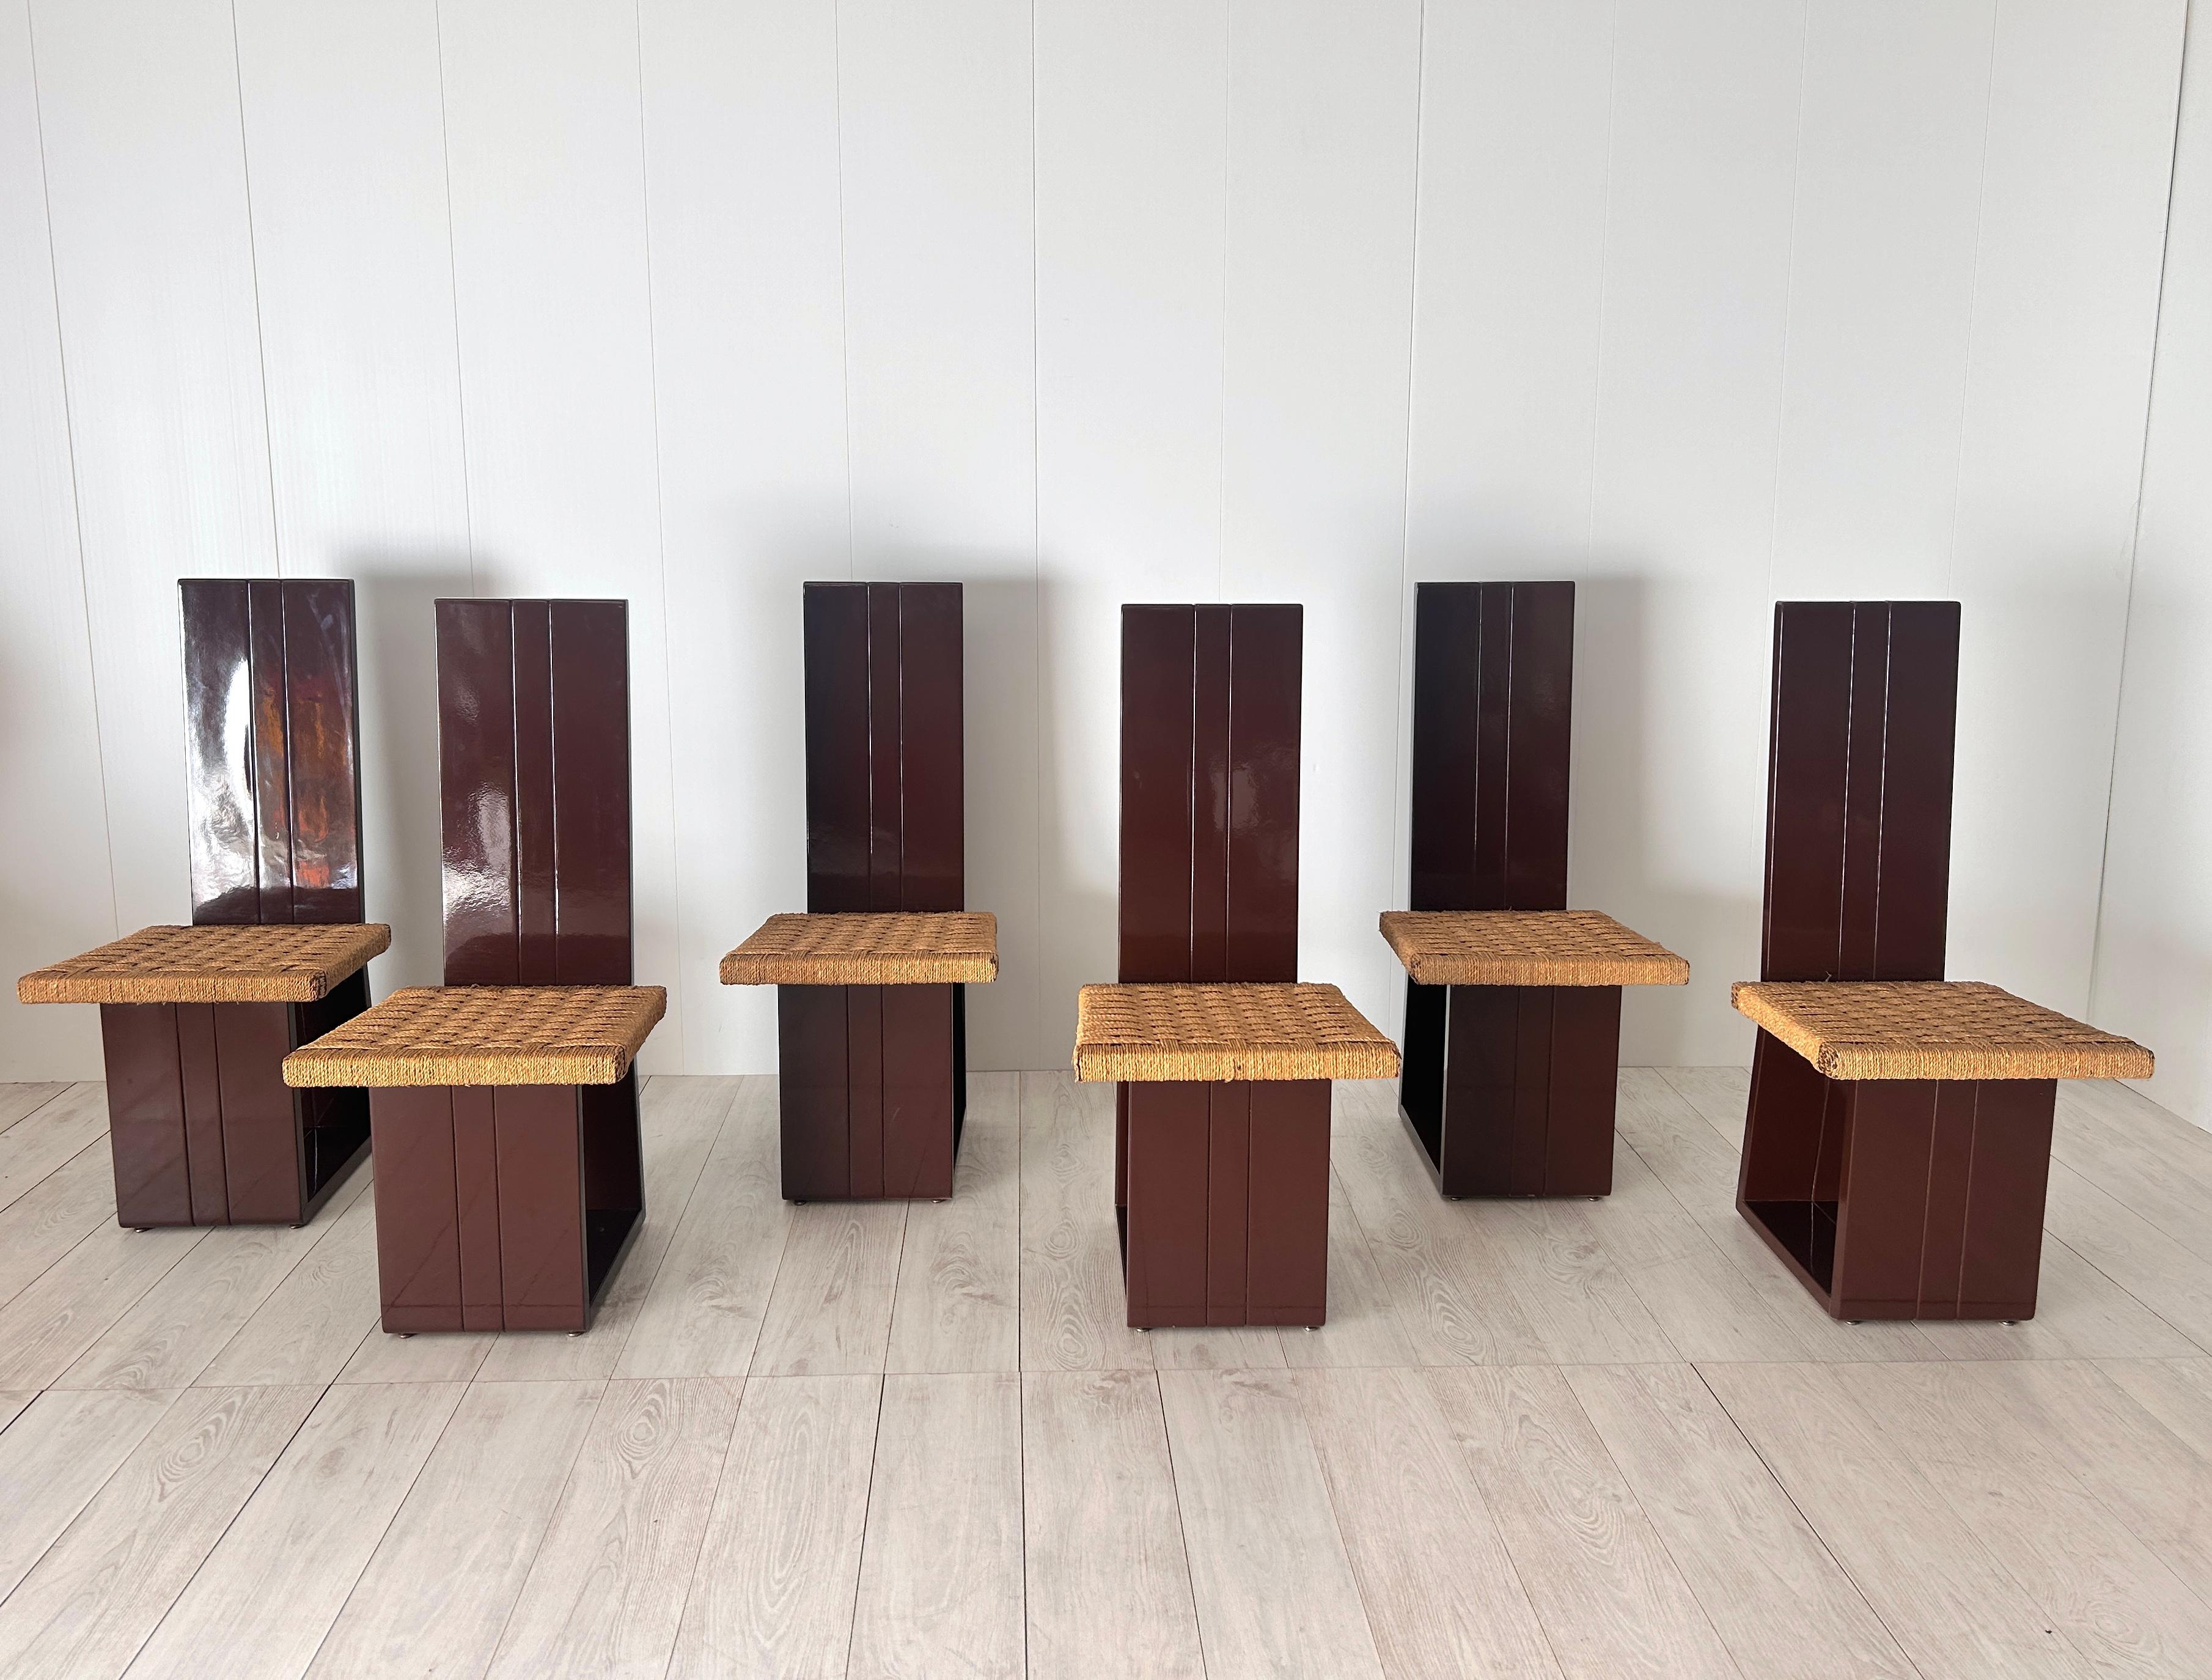 Set di 6 particolare sedie con struttura in legno laccata e seduta in paglia.
